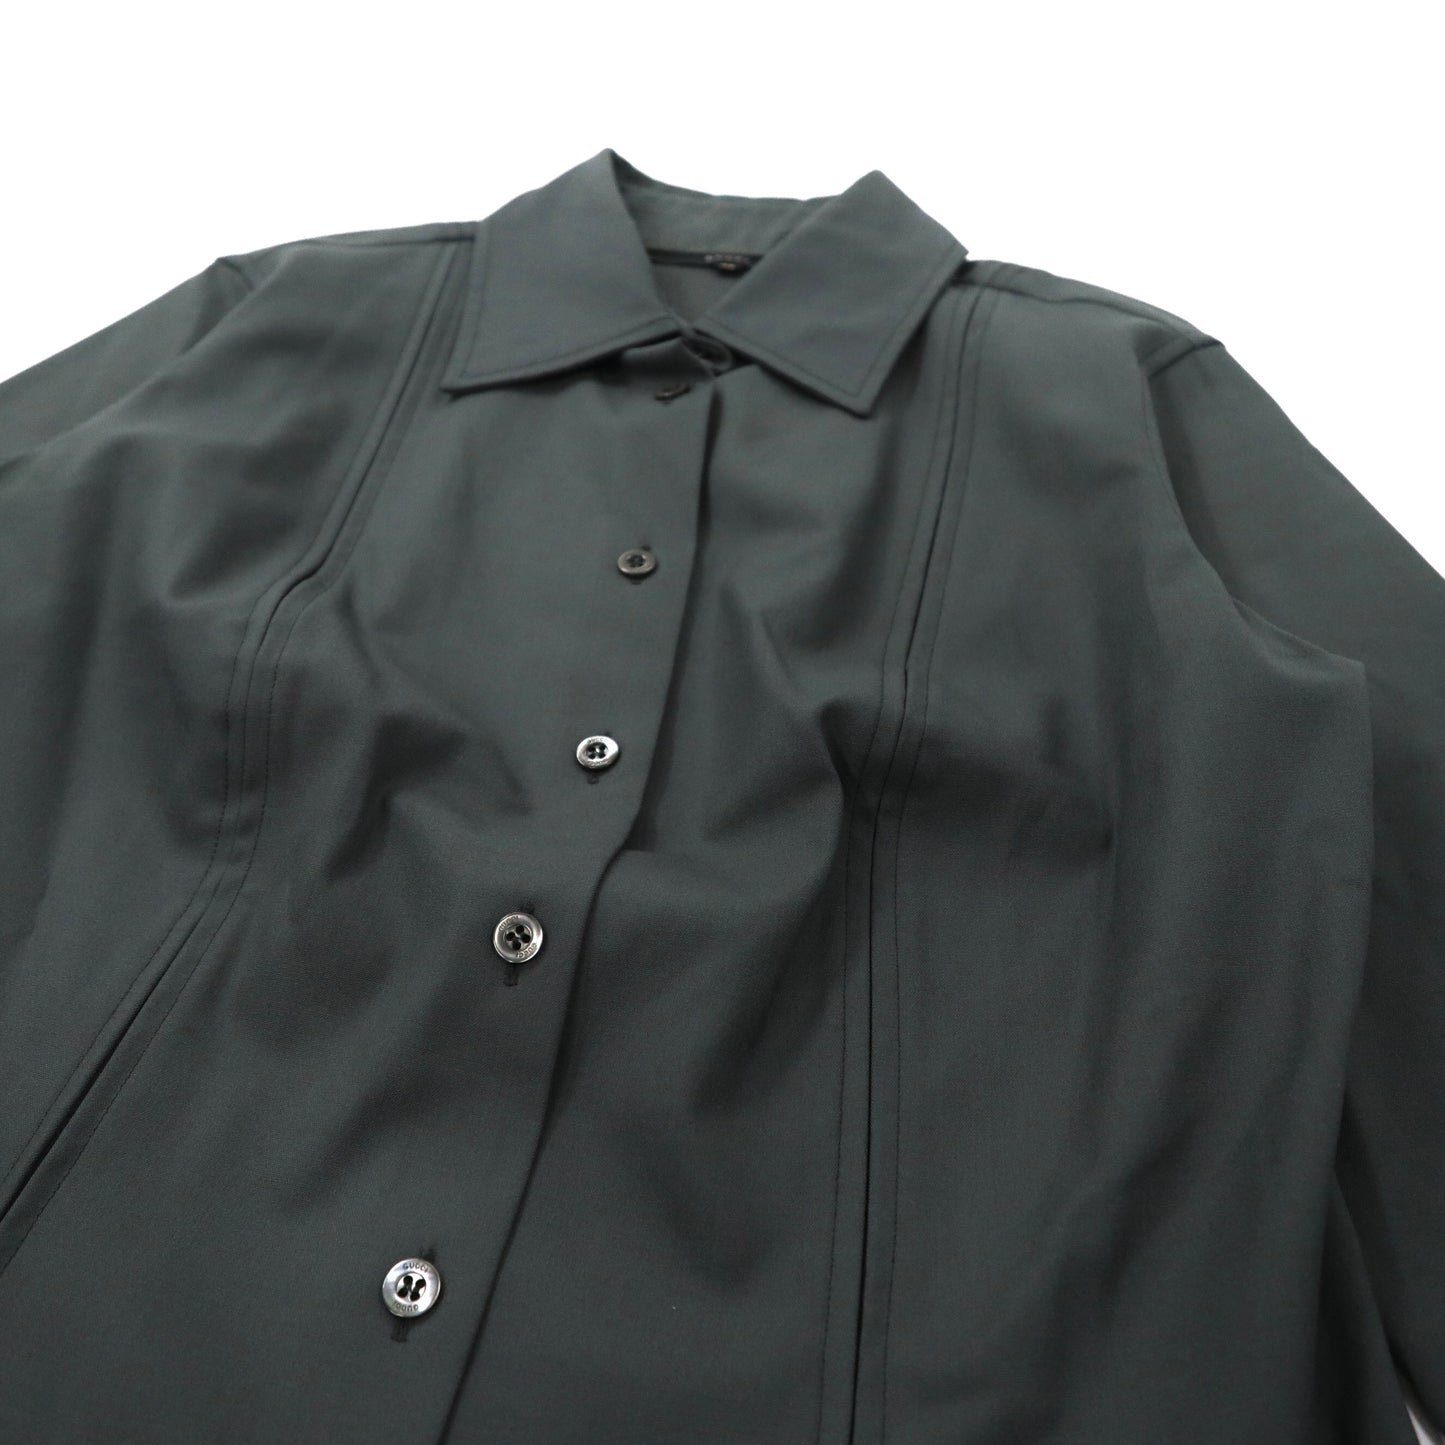 GUCCI ドレスシャツ 40 グレー ウール カシミヤ混 ストレッチ 0209 / VG707 イタリア製